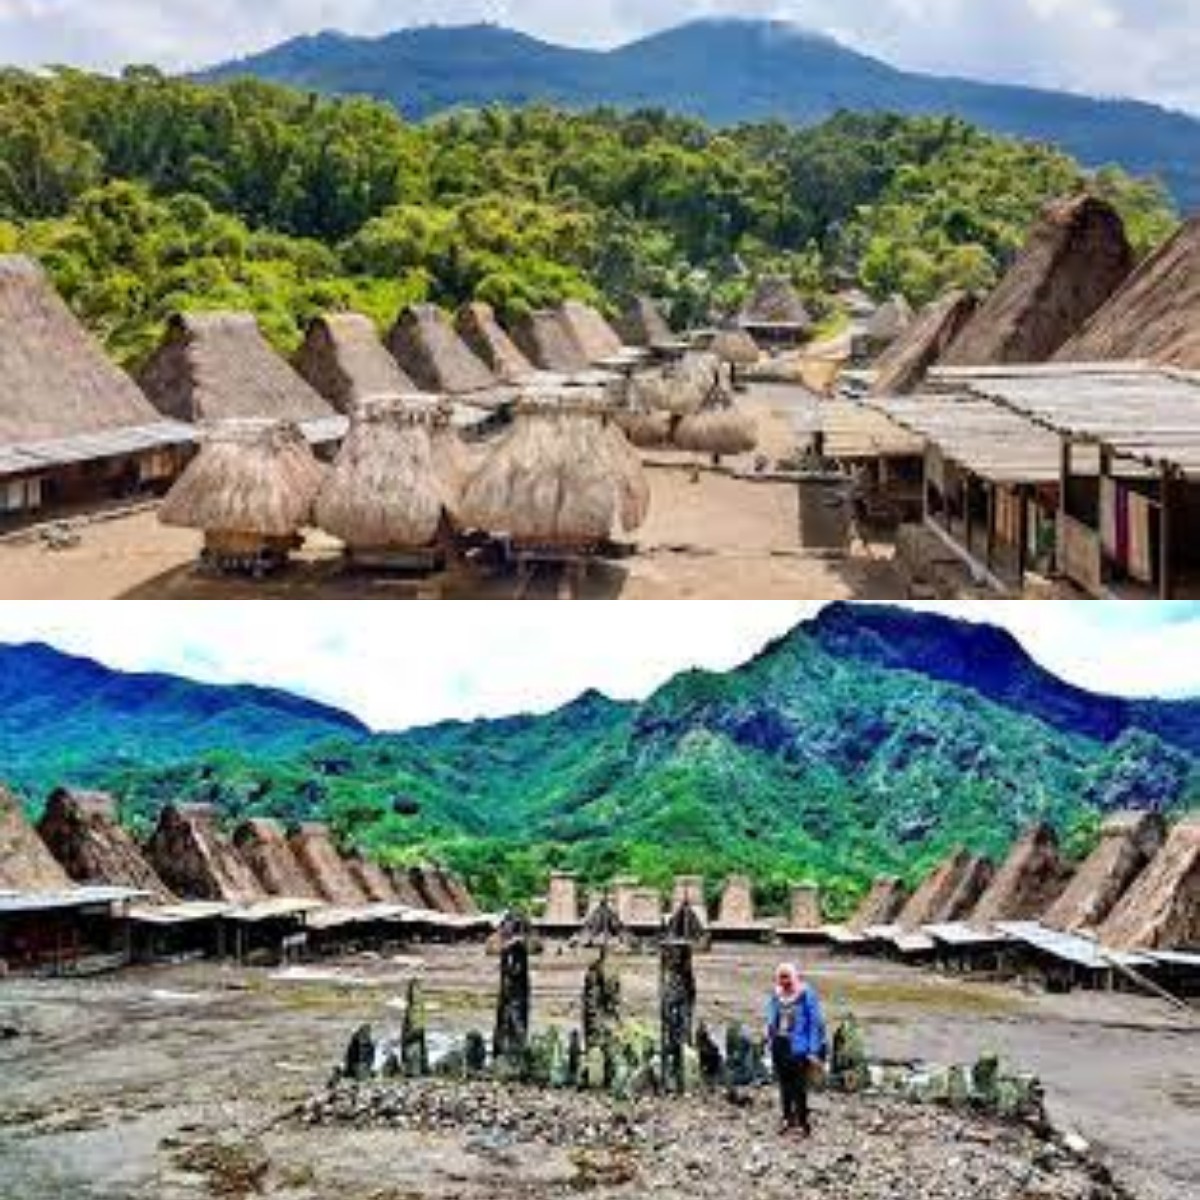  Inilah 6 Desa Wisata Megalitikum di indonesia dengan Keindahan dan Nilai Sejarah yang Tinggi 